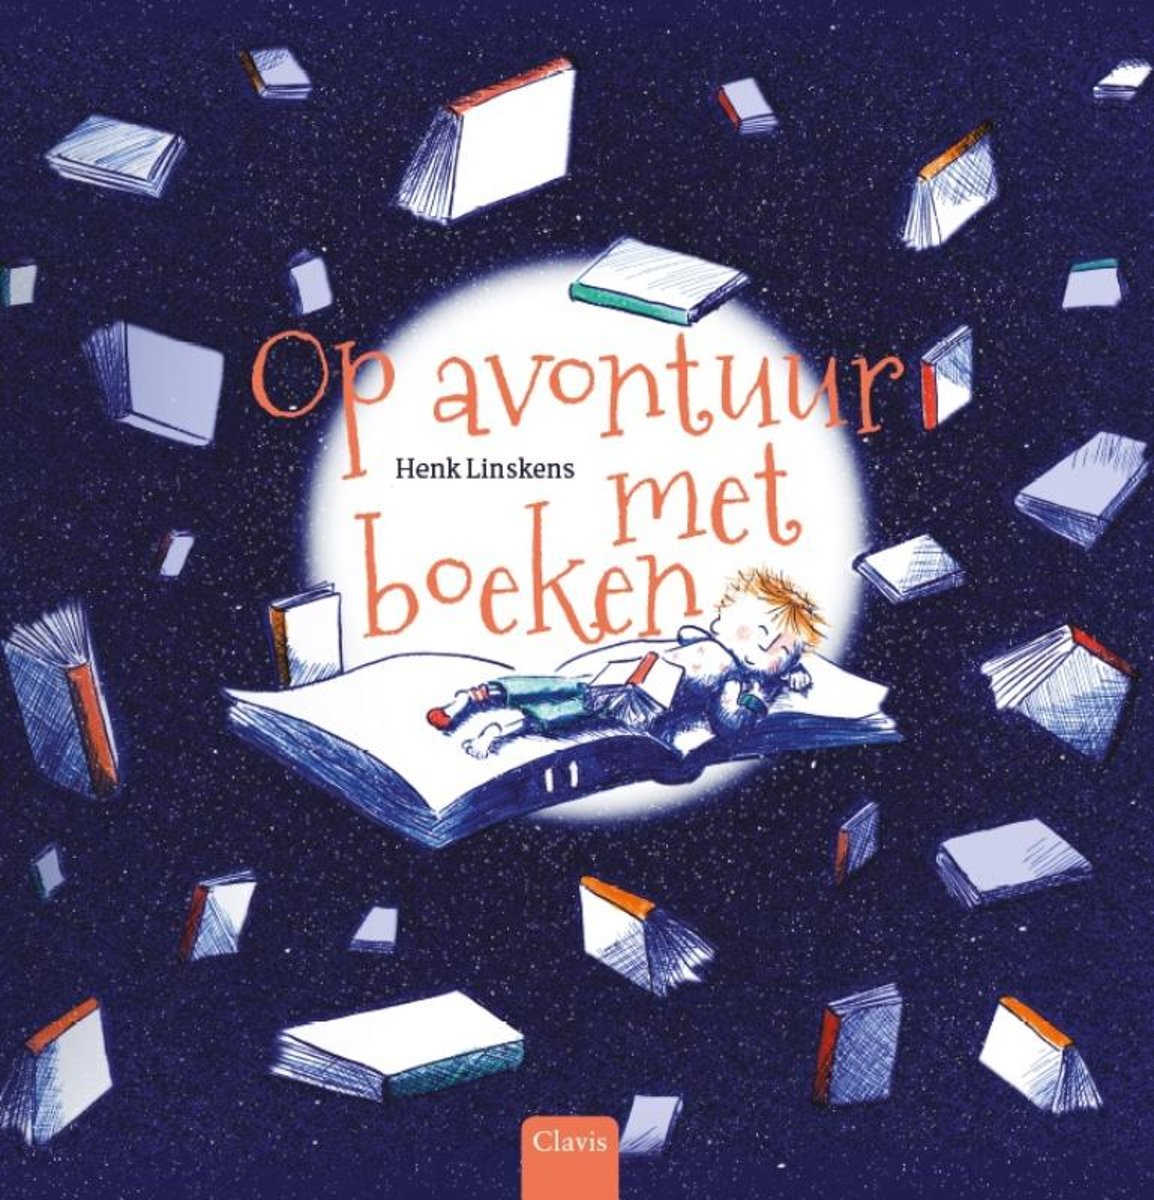 Je bekijkt nu Boekentip: Op avontuur met boeken